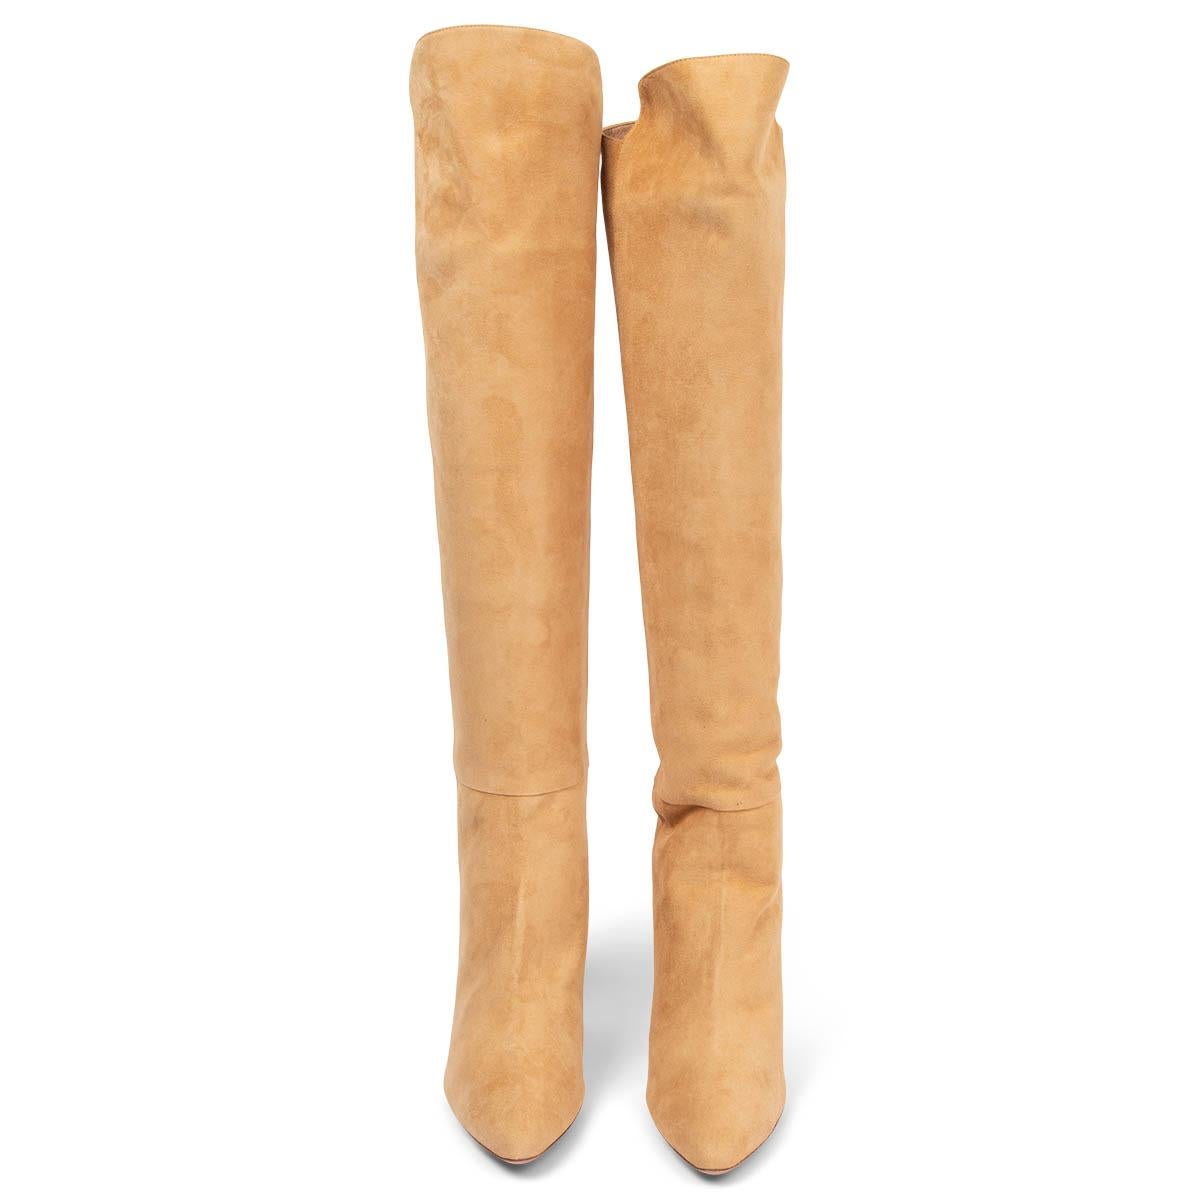 100% authentische Aquazzura Gainsbourg 85 Overknee-Stiefel aus beigem Wildleder mit spitzer Spitze. Brandneu. Lieferung mit Staubbeuteln. 

Messungen
Aufgedruckte Größe	41
Schuhgröße	41
Innensohle	28cm (10.9in)
Breite	8cm (3.1in)
Ferse	8.5cm